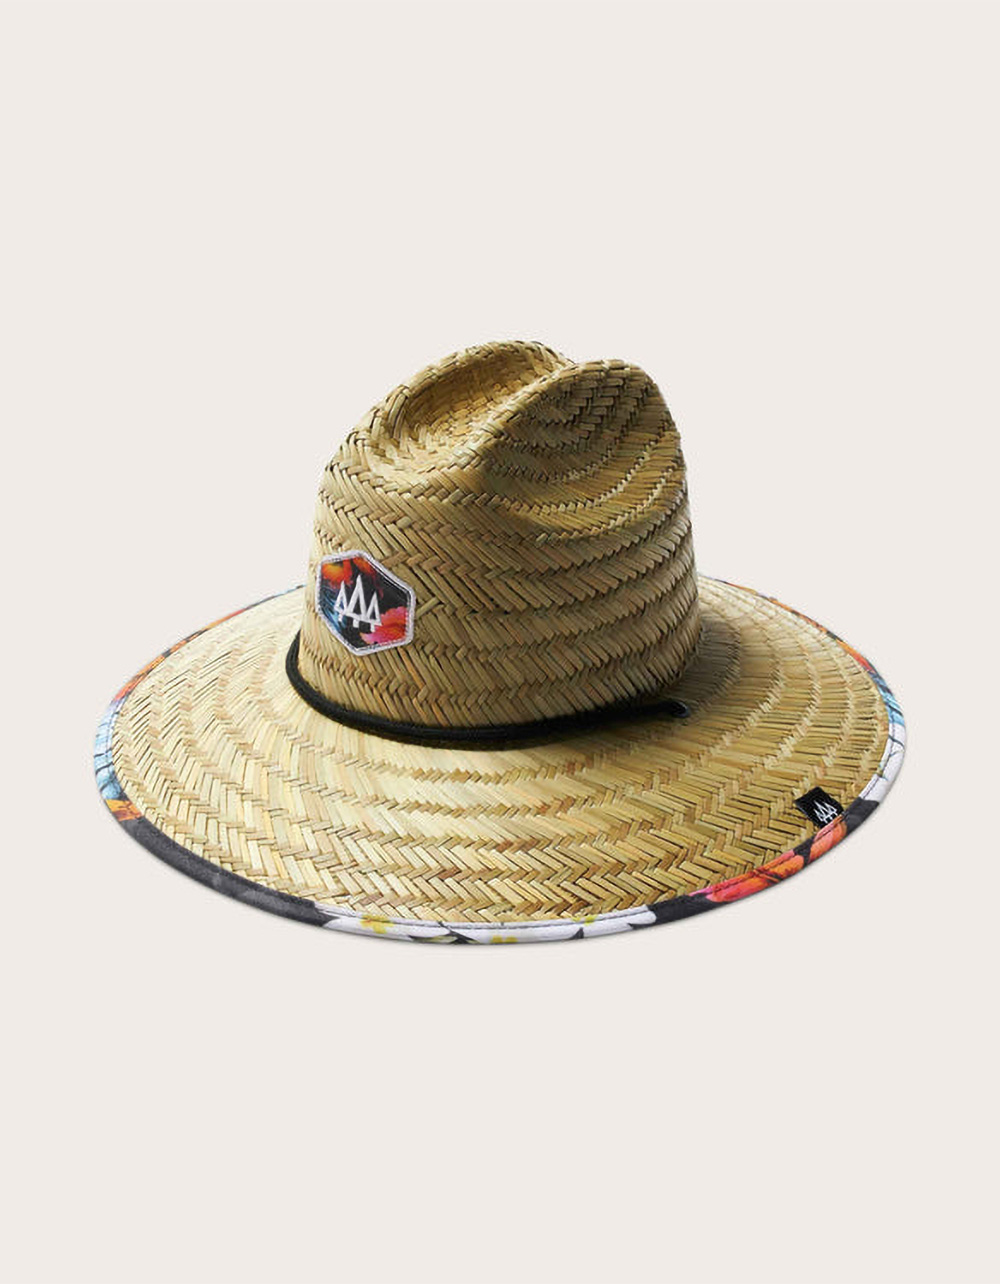 Hemlock Hat Co. Sombrero Paja Niños Grandes (cachorro Niños